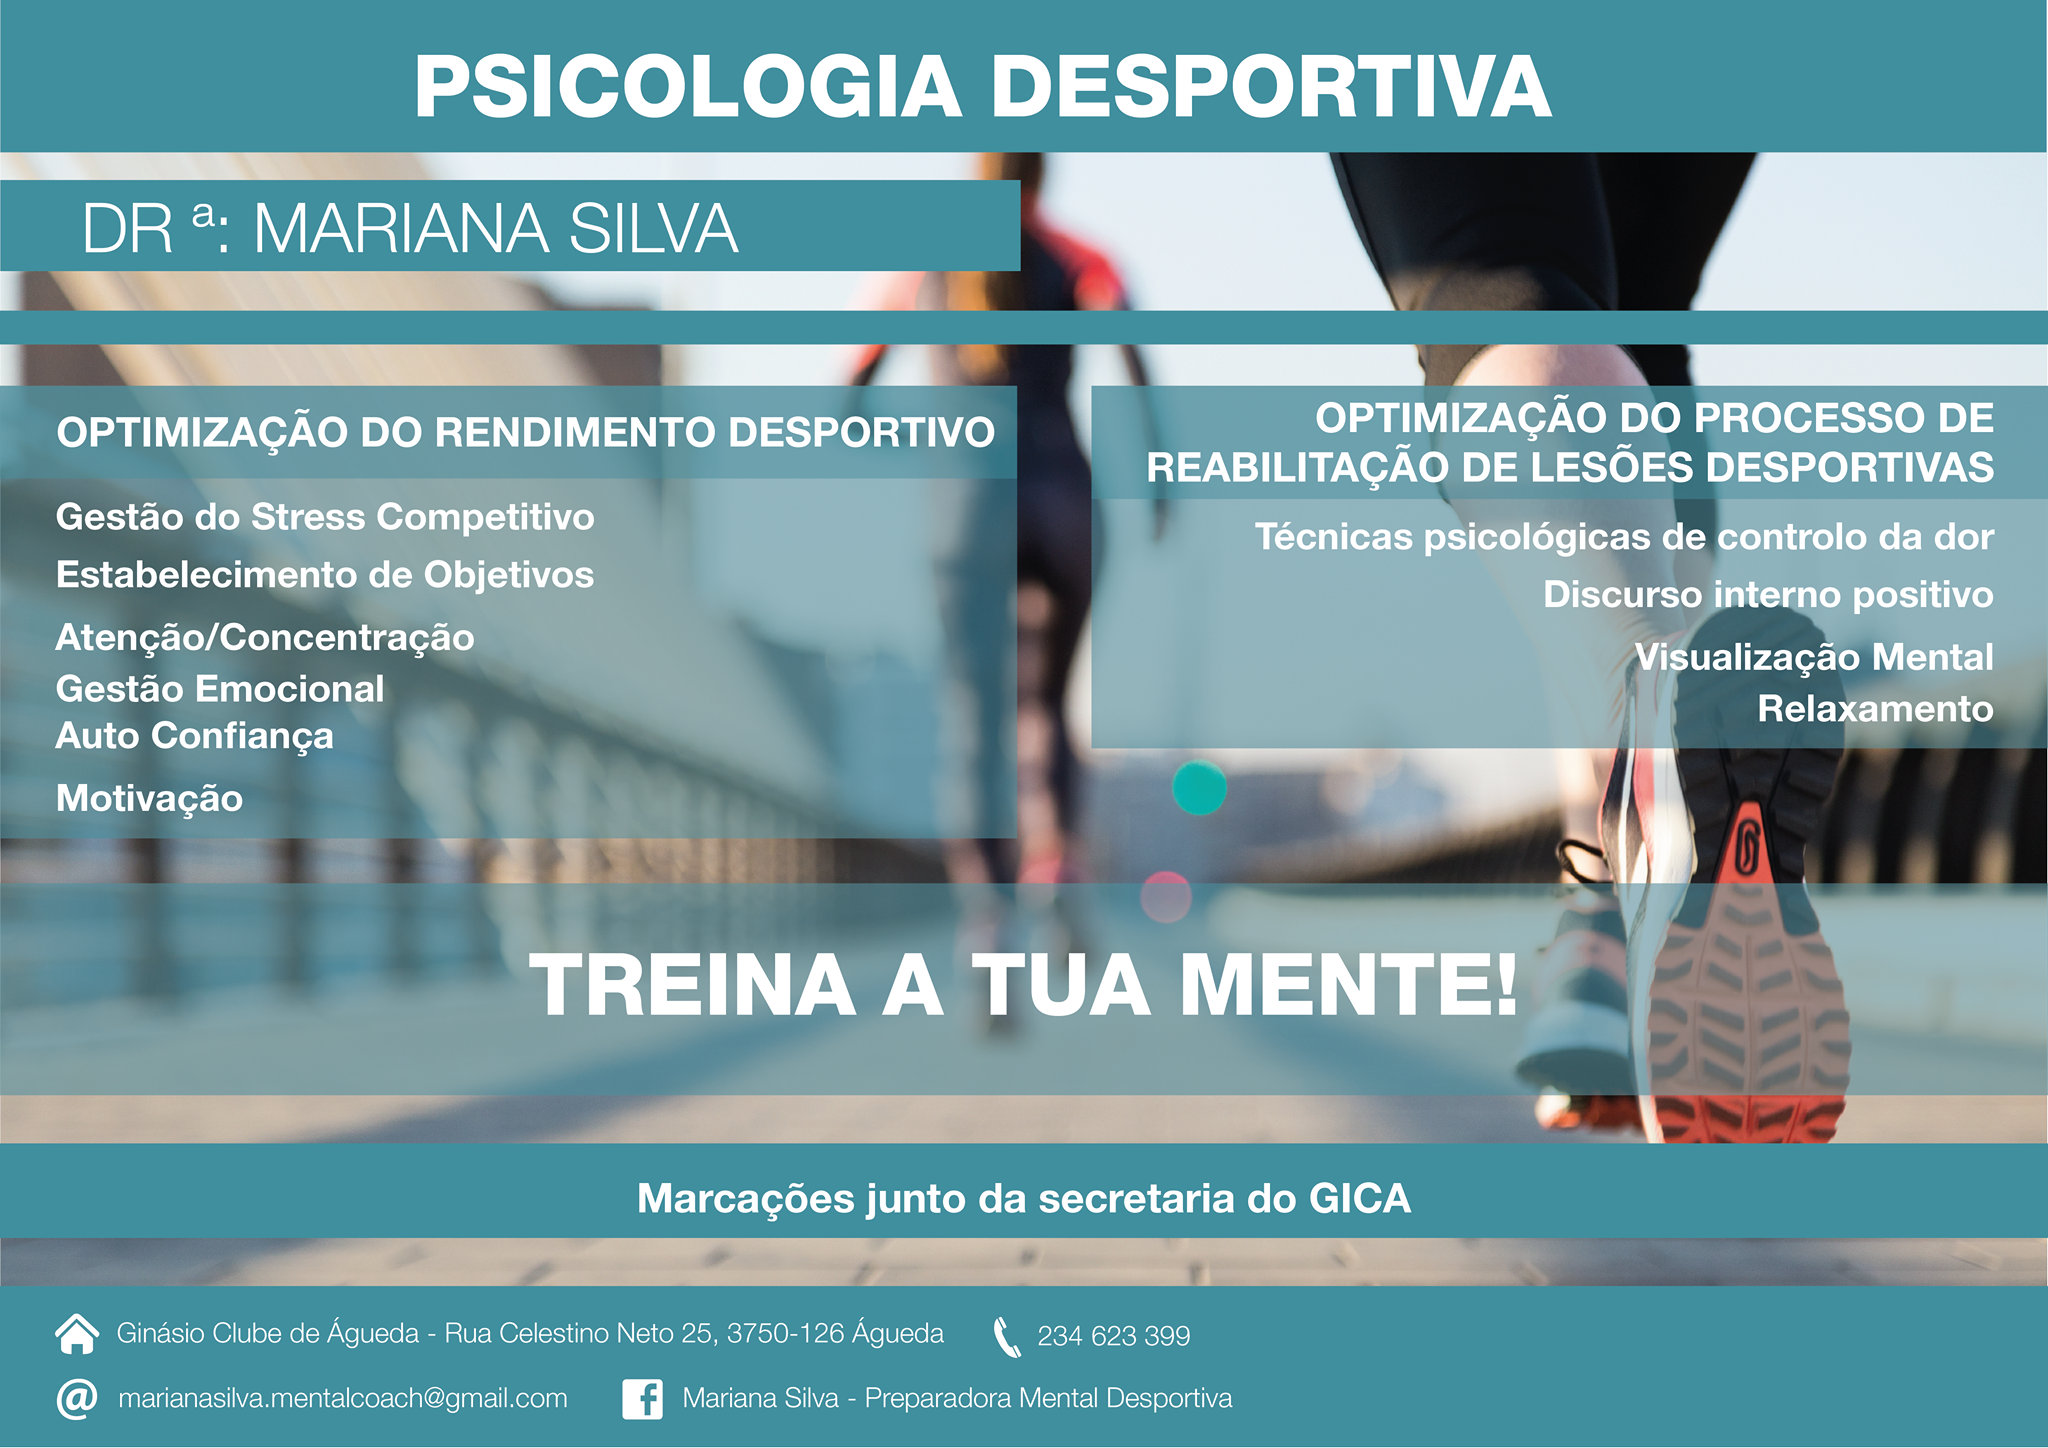 Consultas de Psicologia Desportiva.